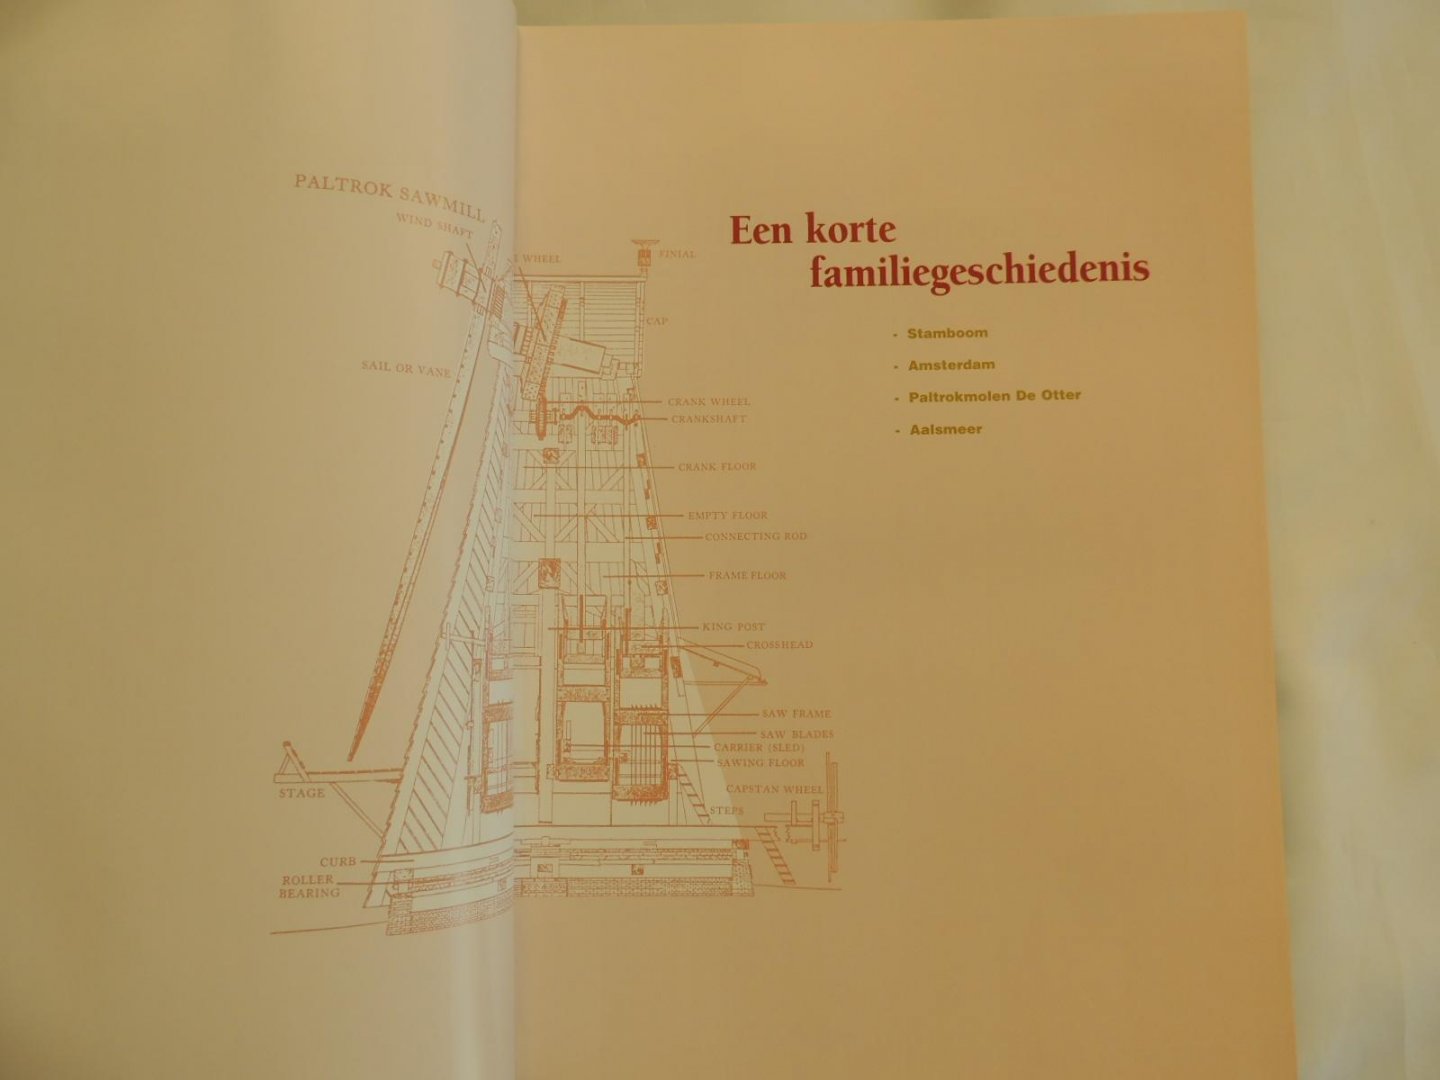 Vries, Bieb, Huib & Henk de (samenstellers) - Koninklijke De Vries Scheepsbouw 100 jaar 1906-2006